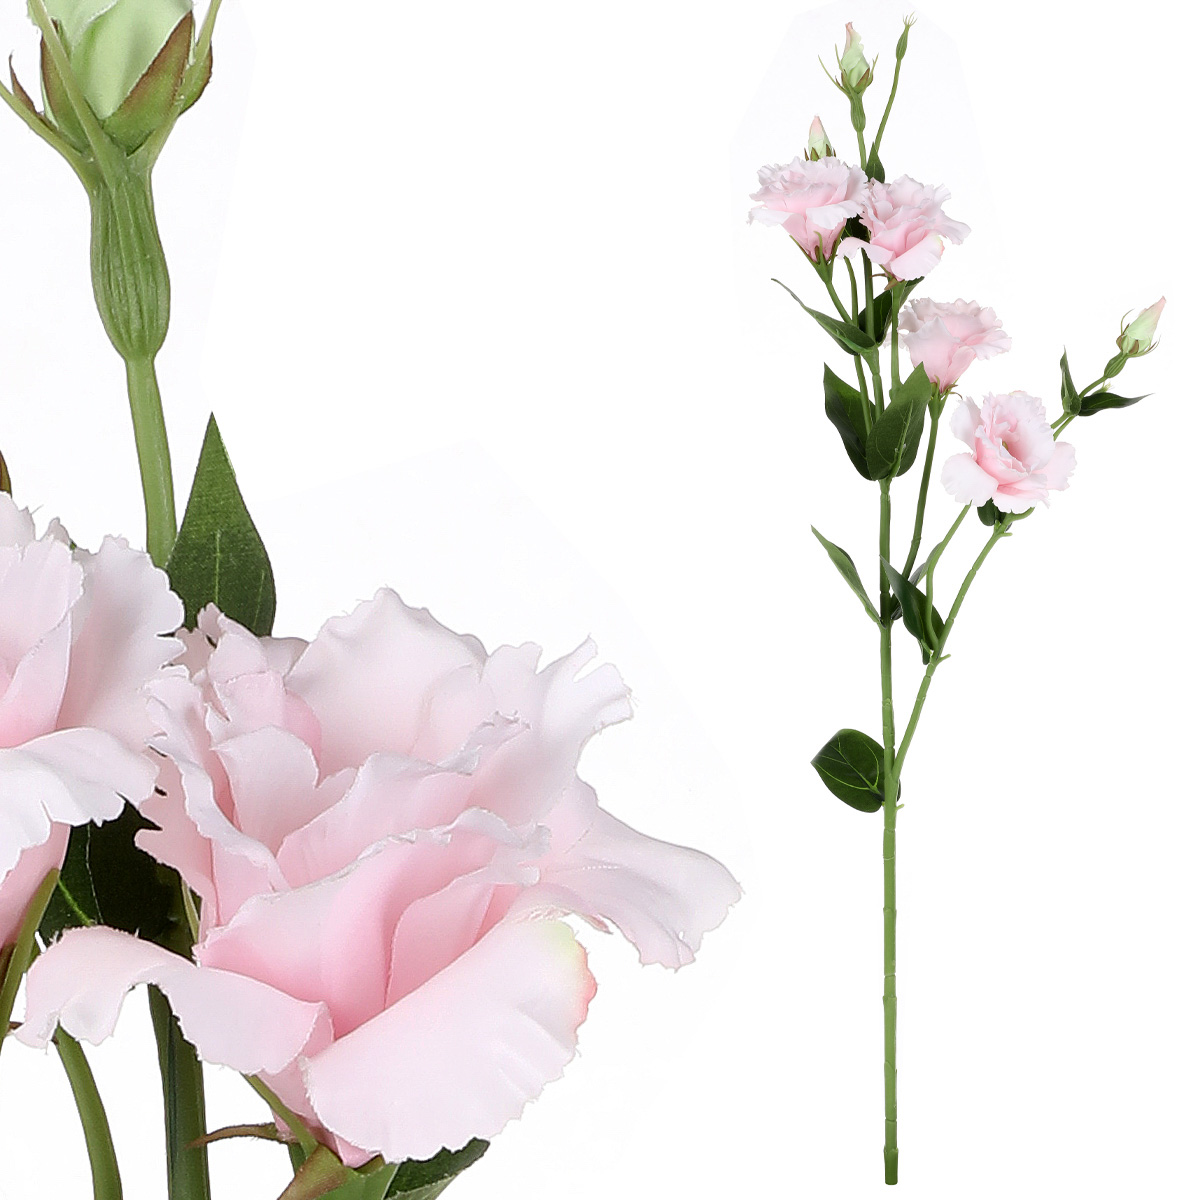 Eustoma - umělá květina, barva růžová.